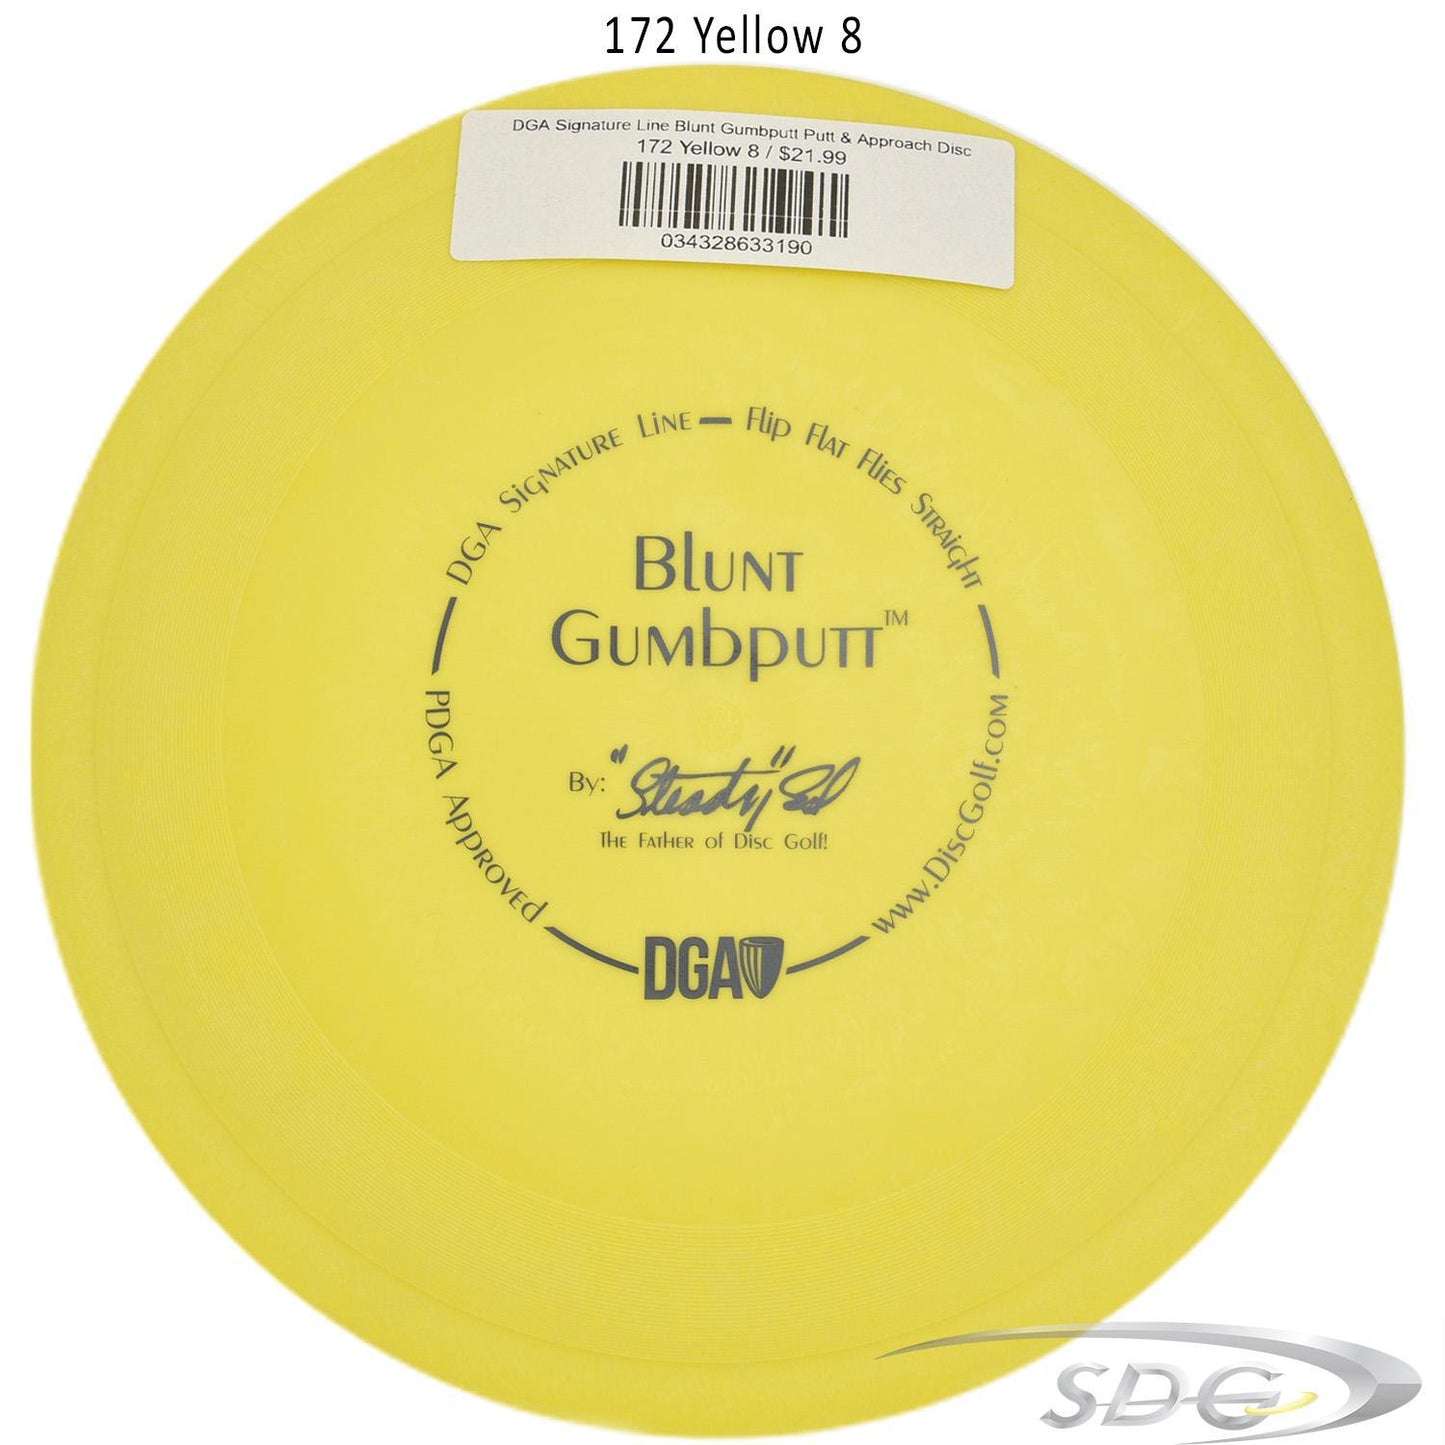 dga-signature-line-blunt-gumbputt-putt-approach-disc 172 Yellow 8 